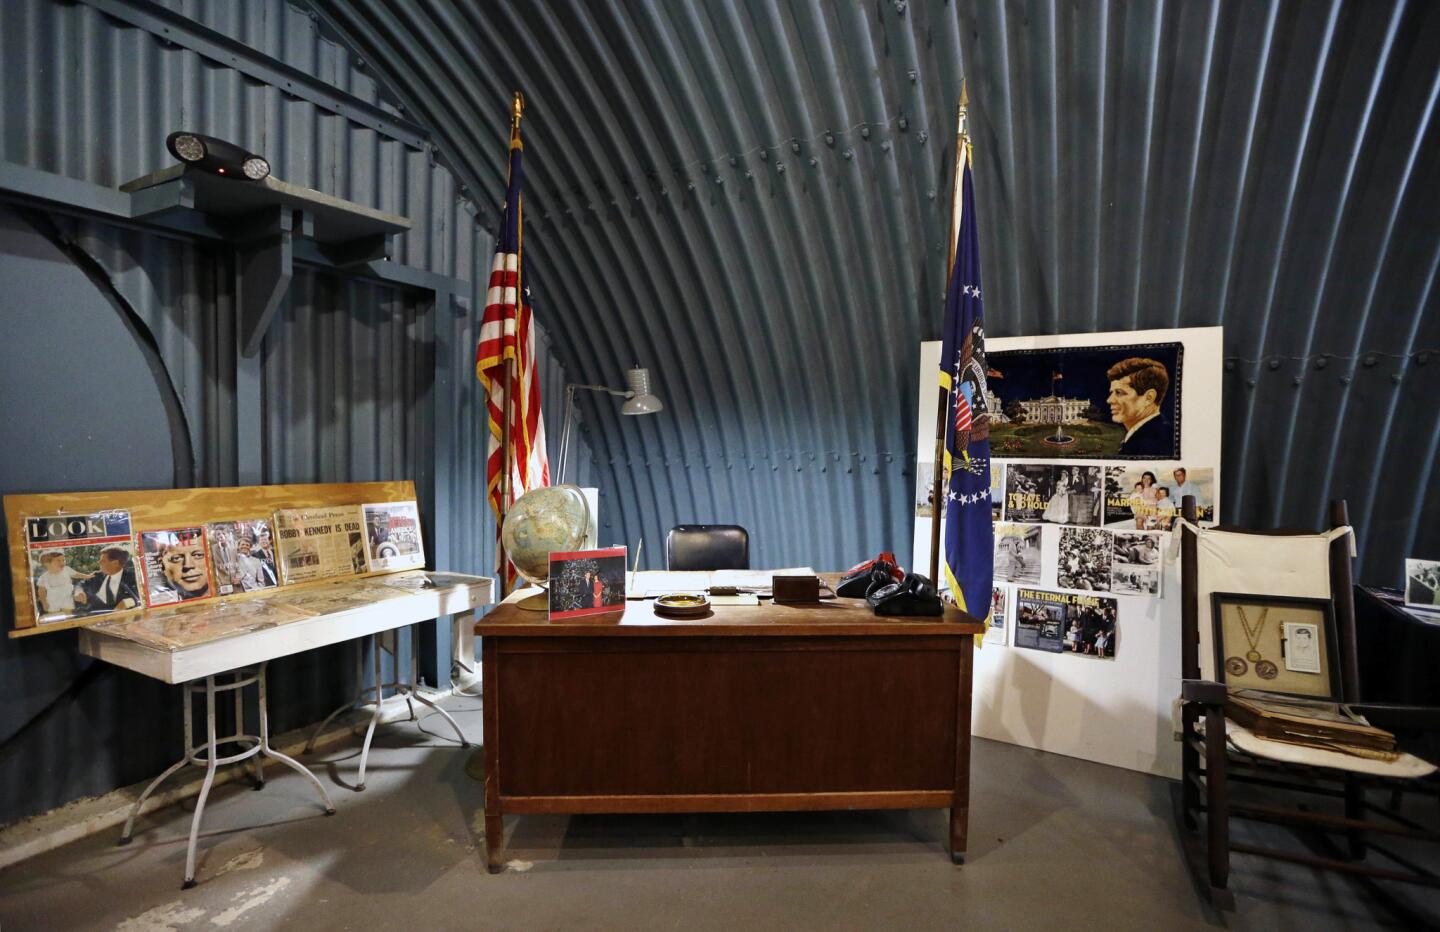 Kennedy's bunker